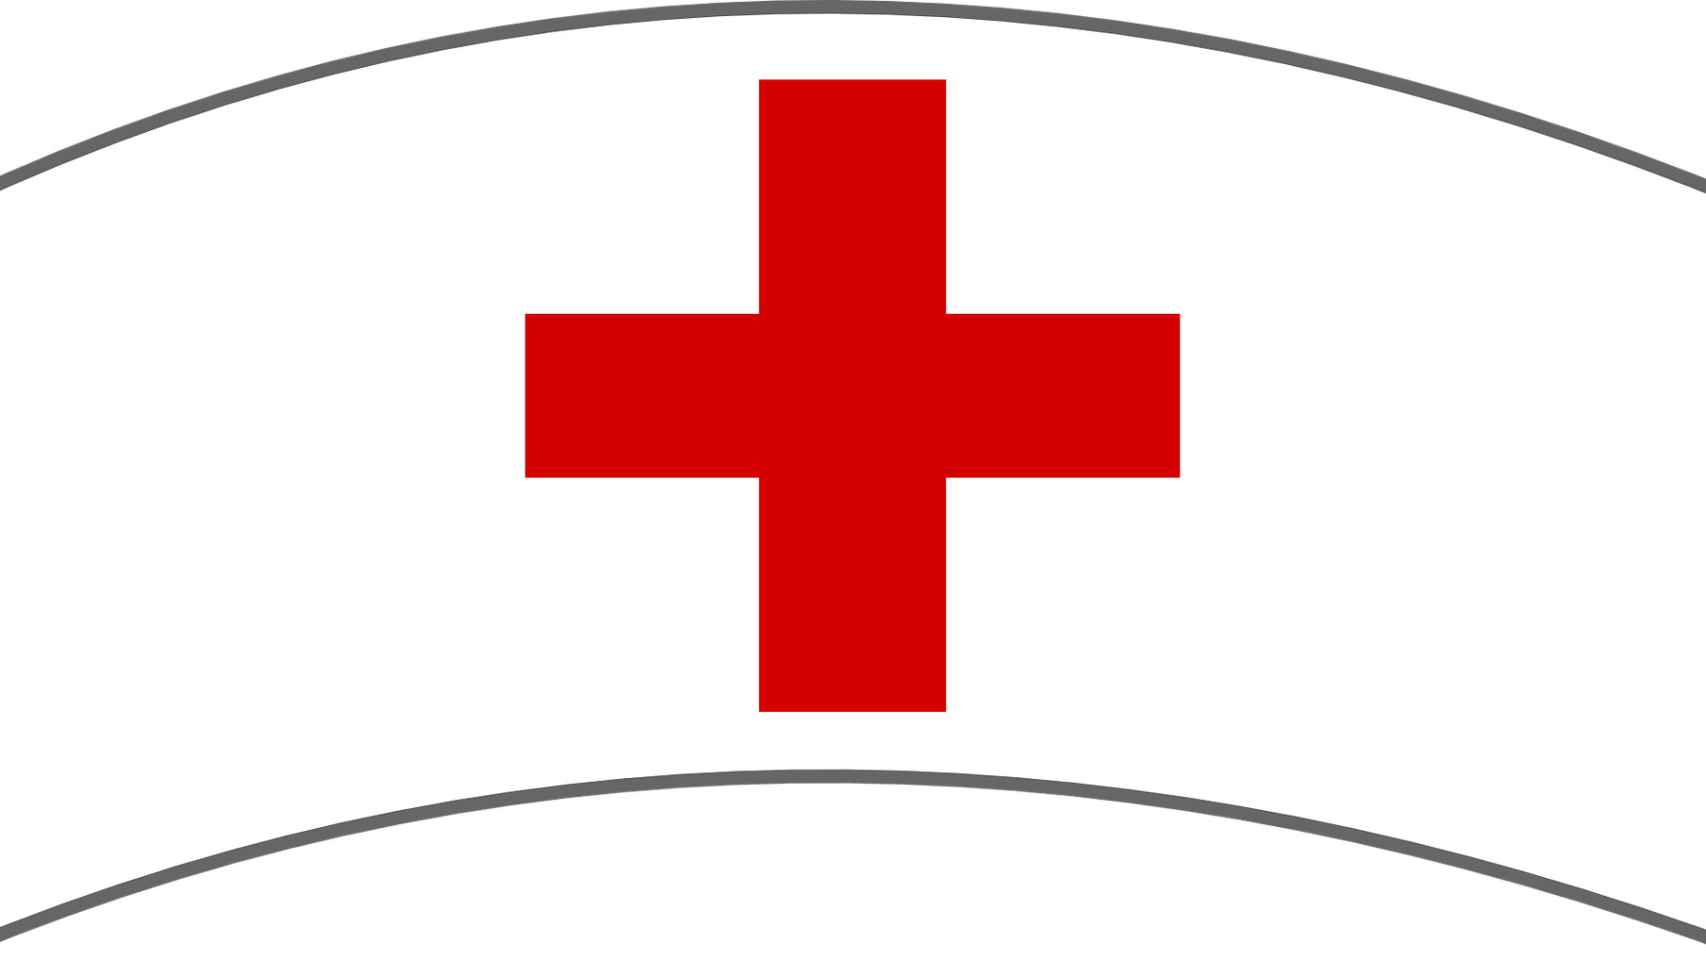 5 datos curiosos que no conoces sobre la Cruz Roja